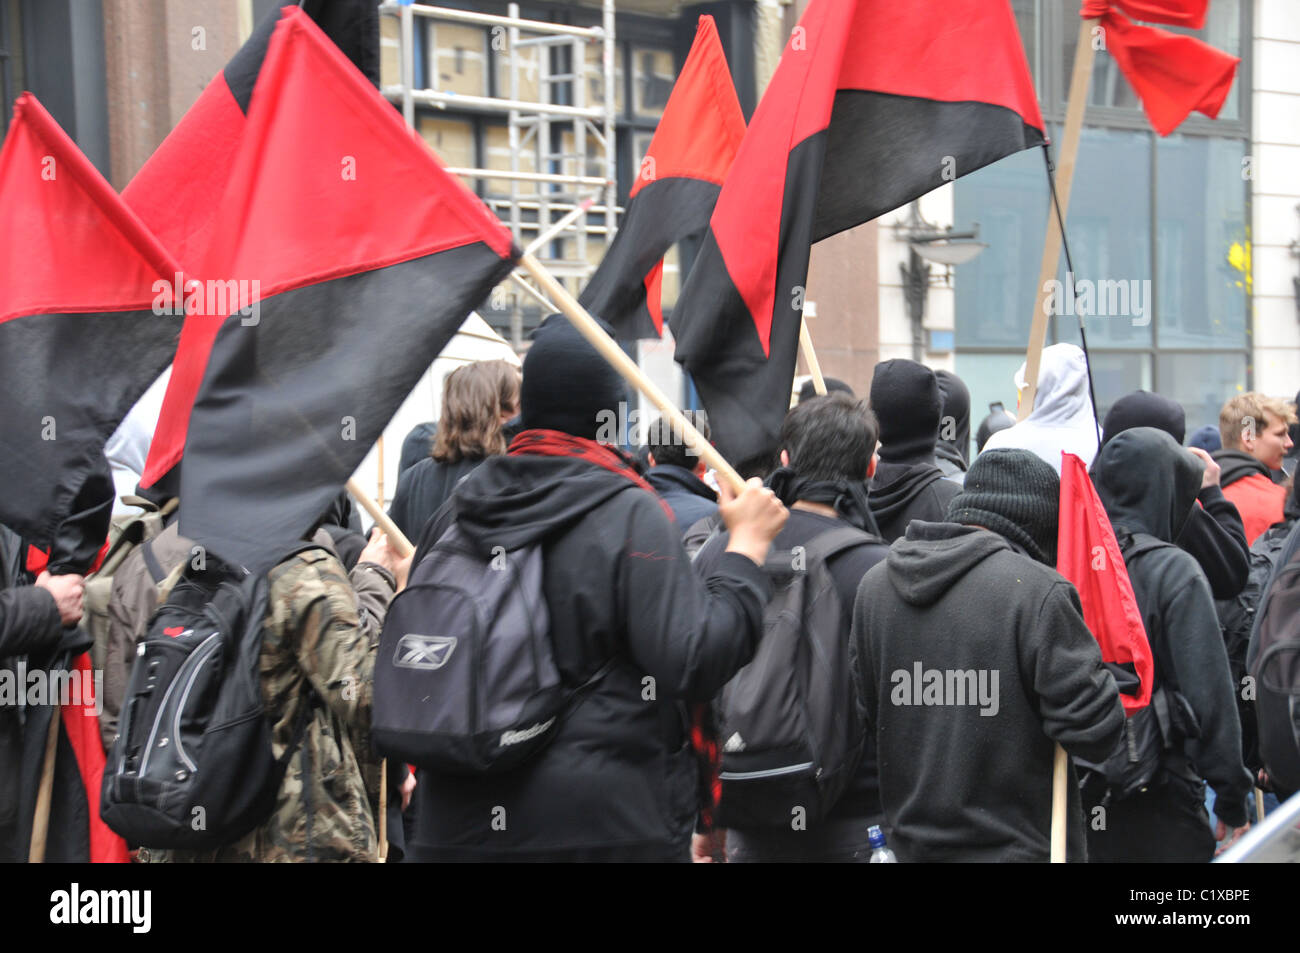 'Black Bloc' bloque negro anarquistas anarquía de marzo de 2011 Londres alternativo protesta y motín contra los recortes gubernamentales Foto de stock